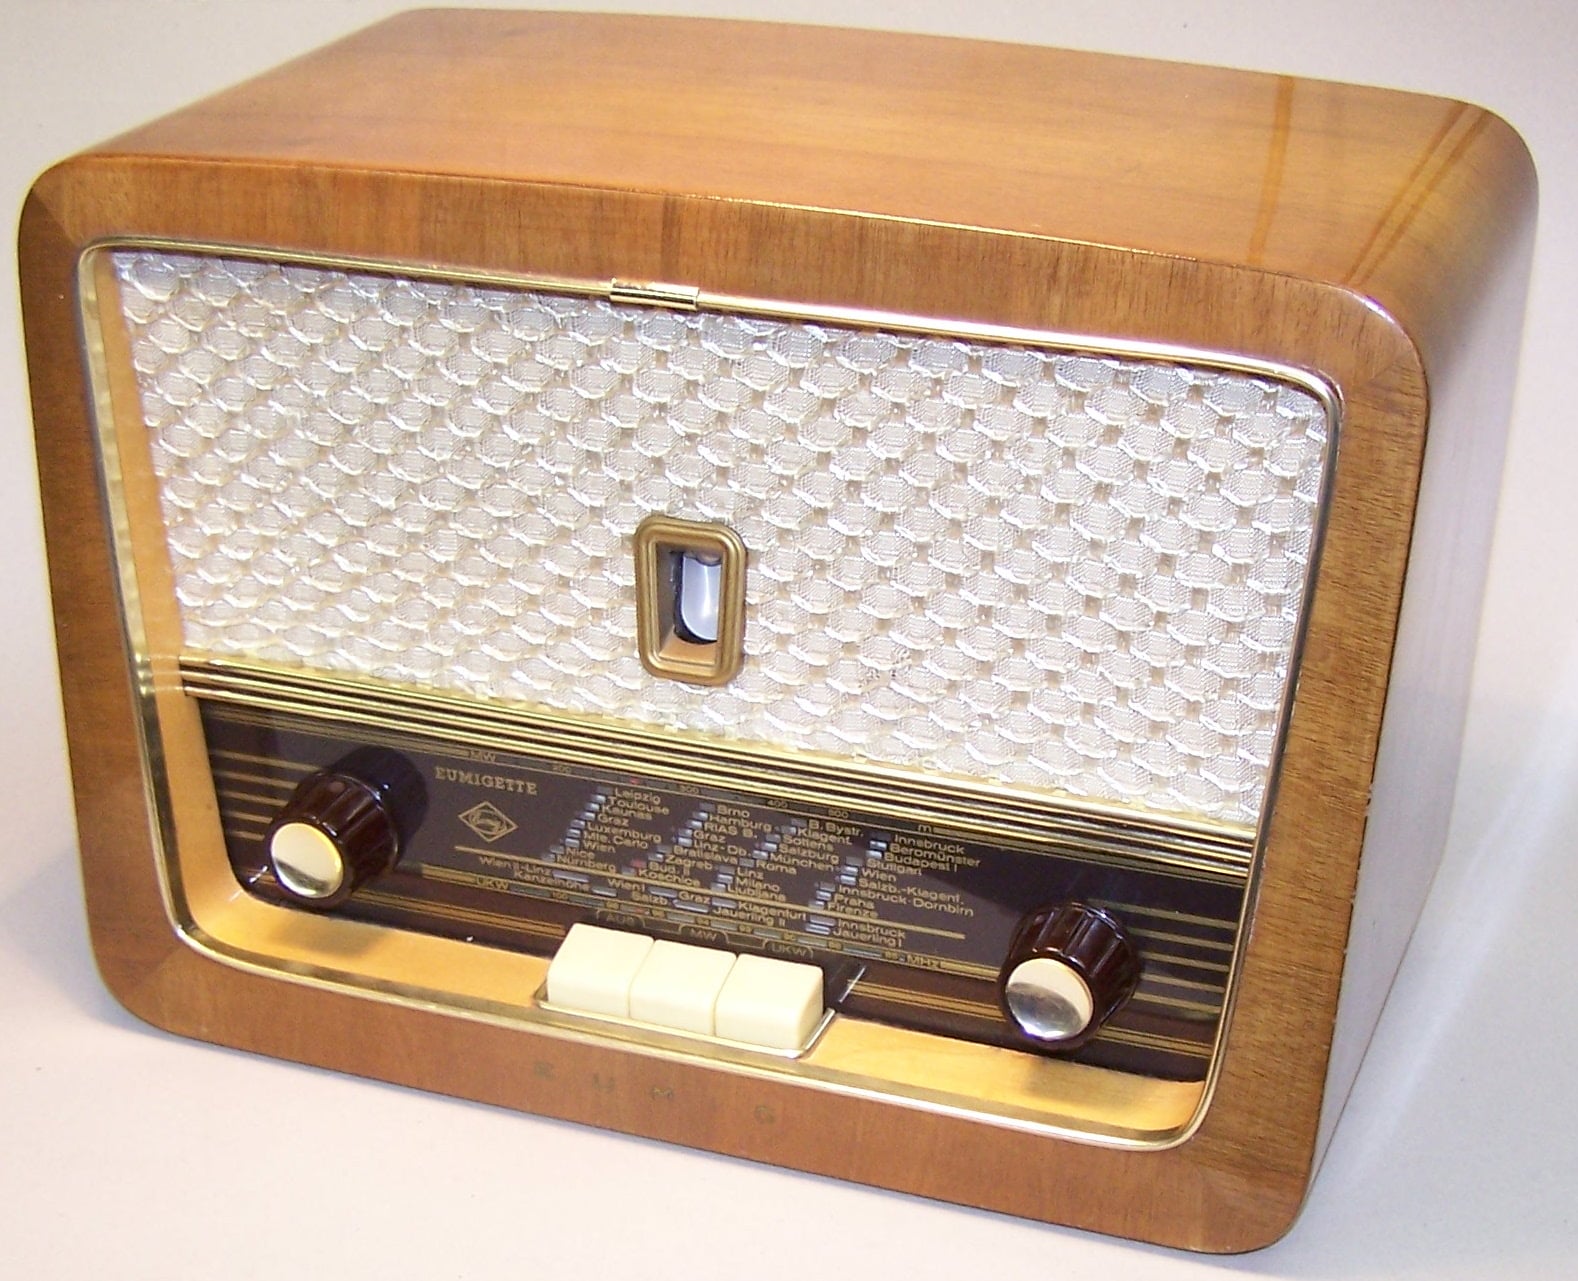 Unser altes Radio - Technik und Geschichte